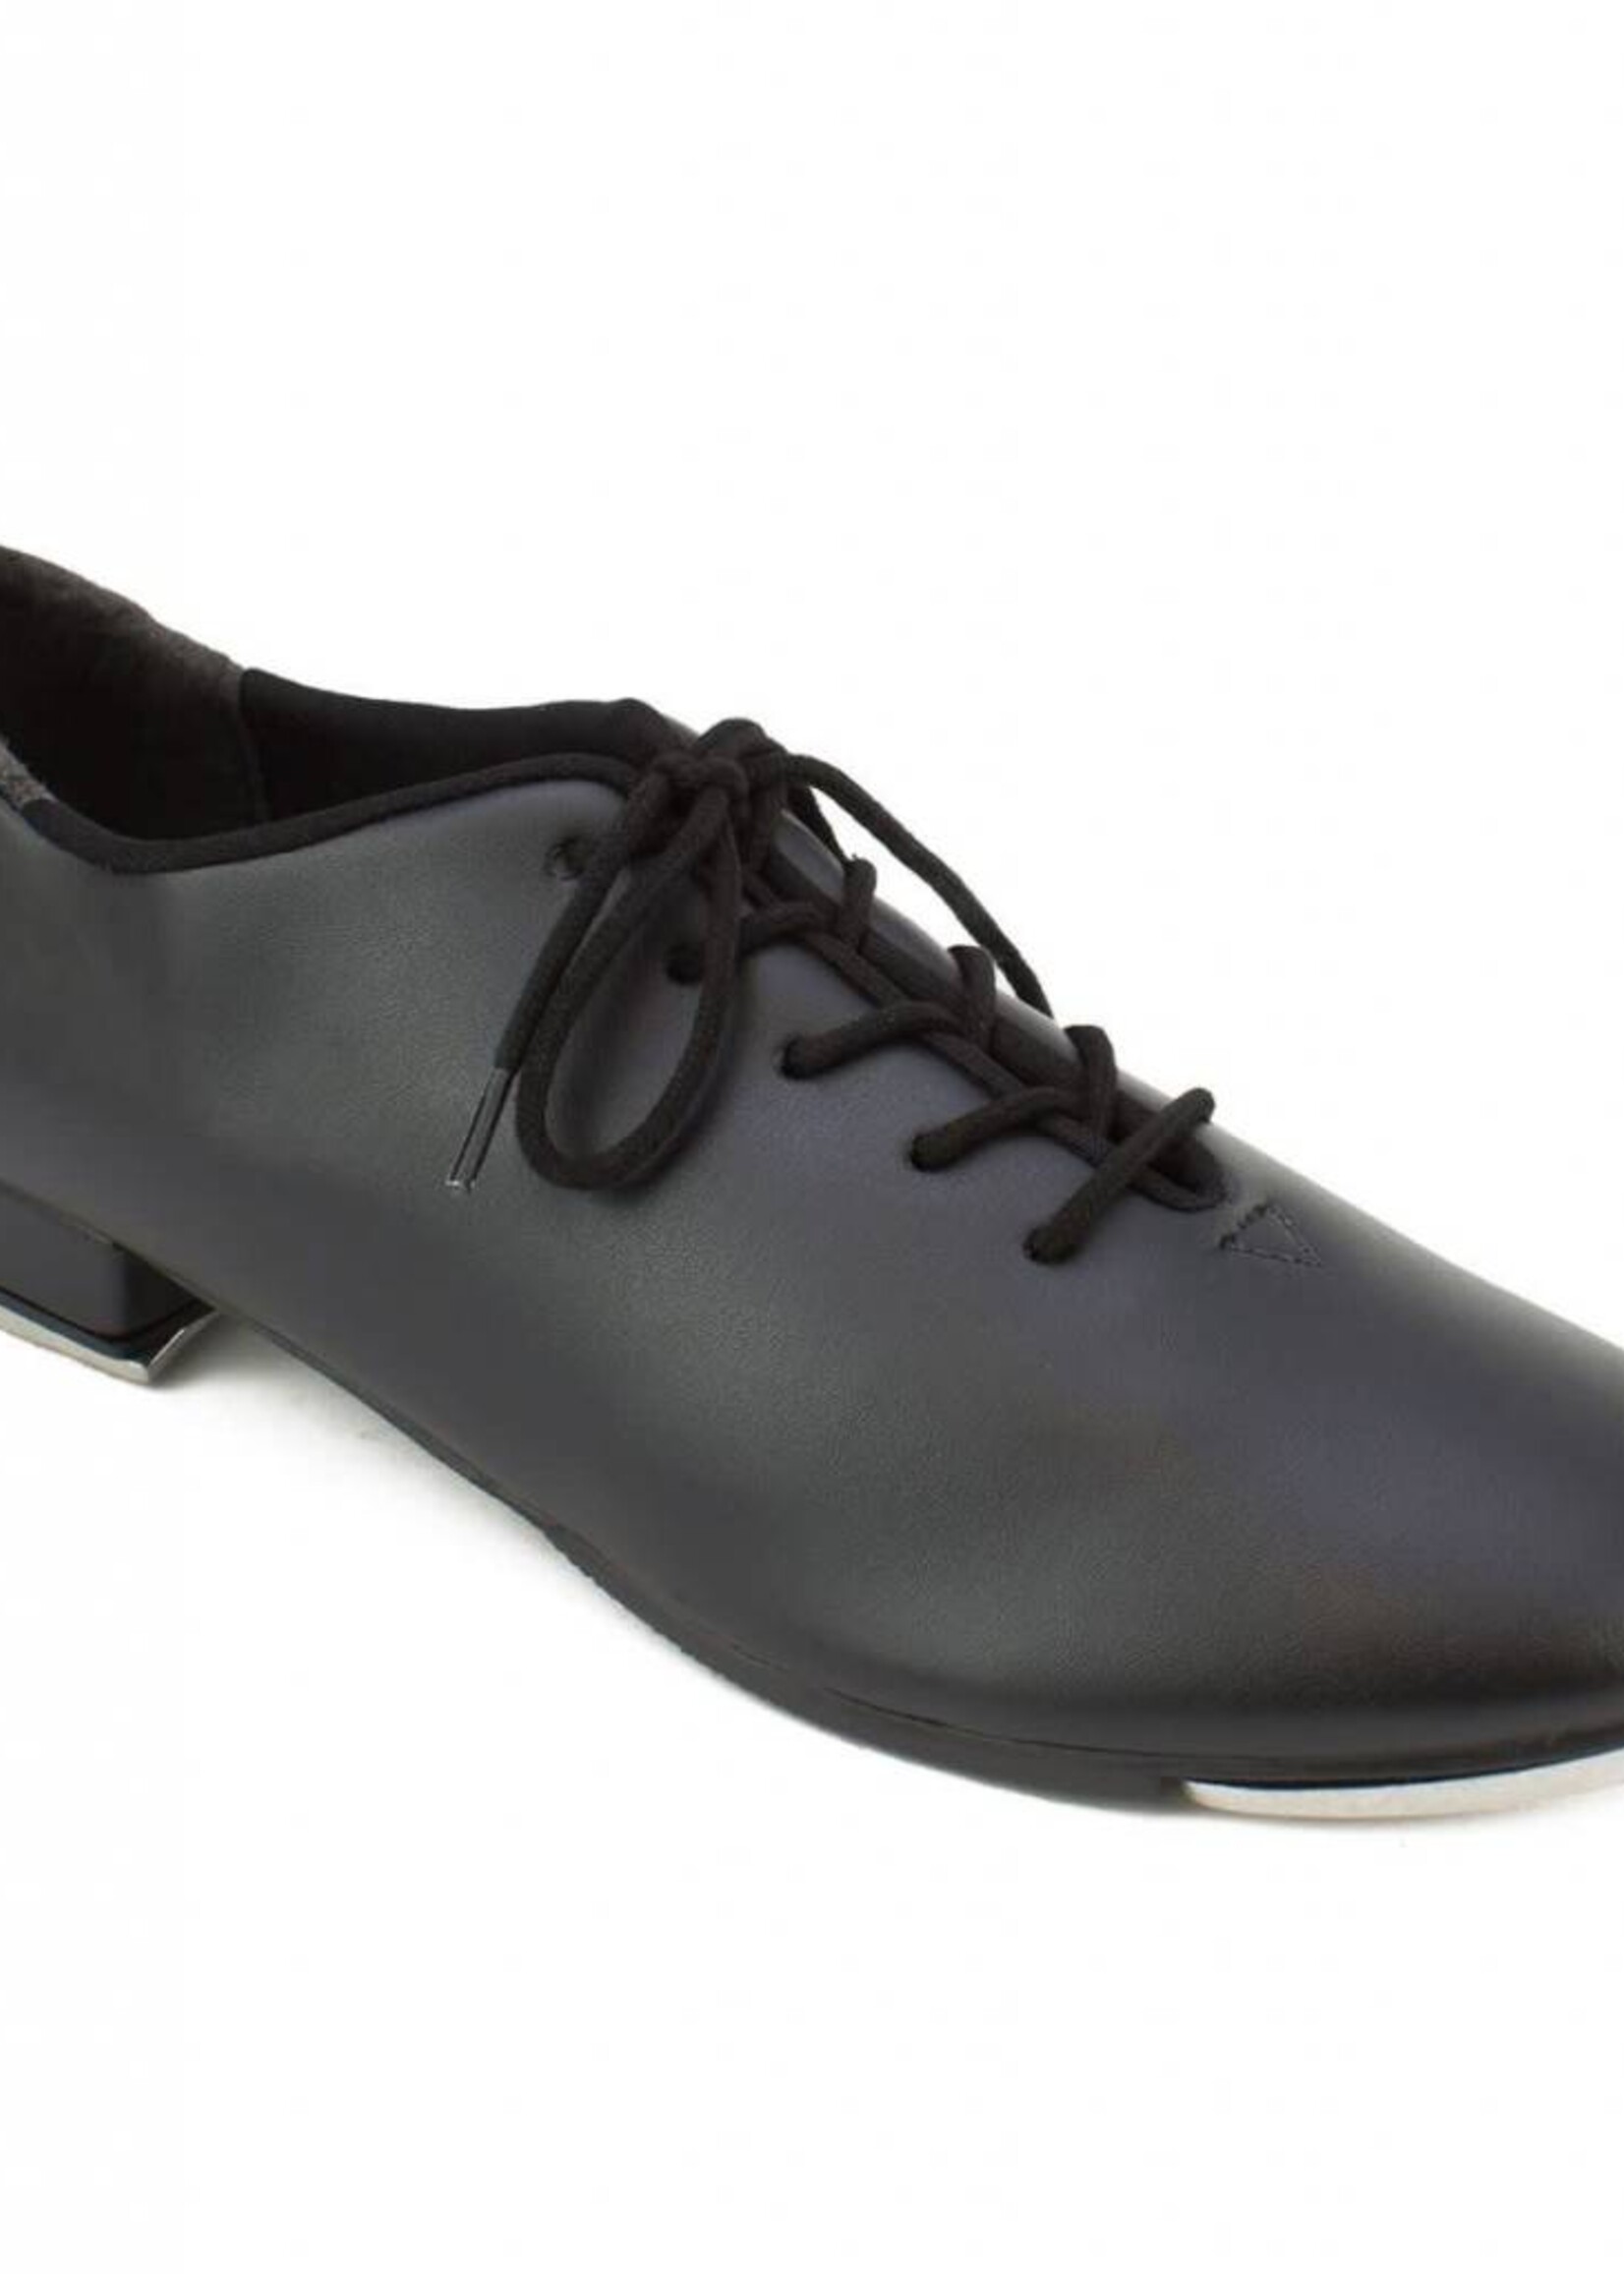 SoDanća TA05 ADULT OXFORD (LACE) Tap Shoes BLACK